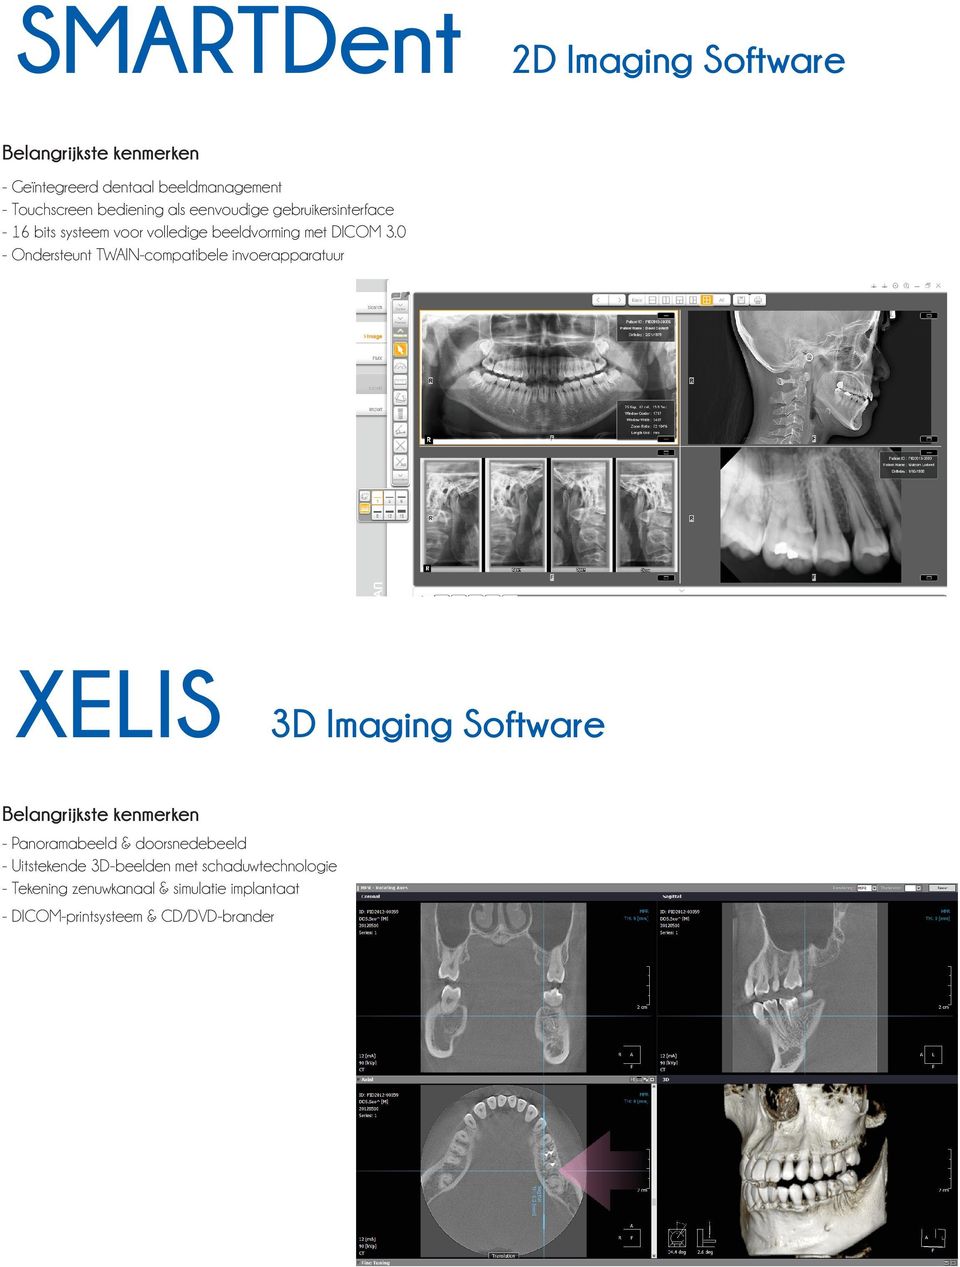 0 - Ondersteunt TWAIN-compatibele invoerapparatuur XELIS 3D Imaging Software Belangrijkste kenmerken - Panoramabeeld &